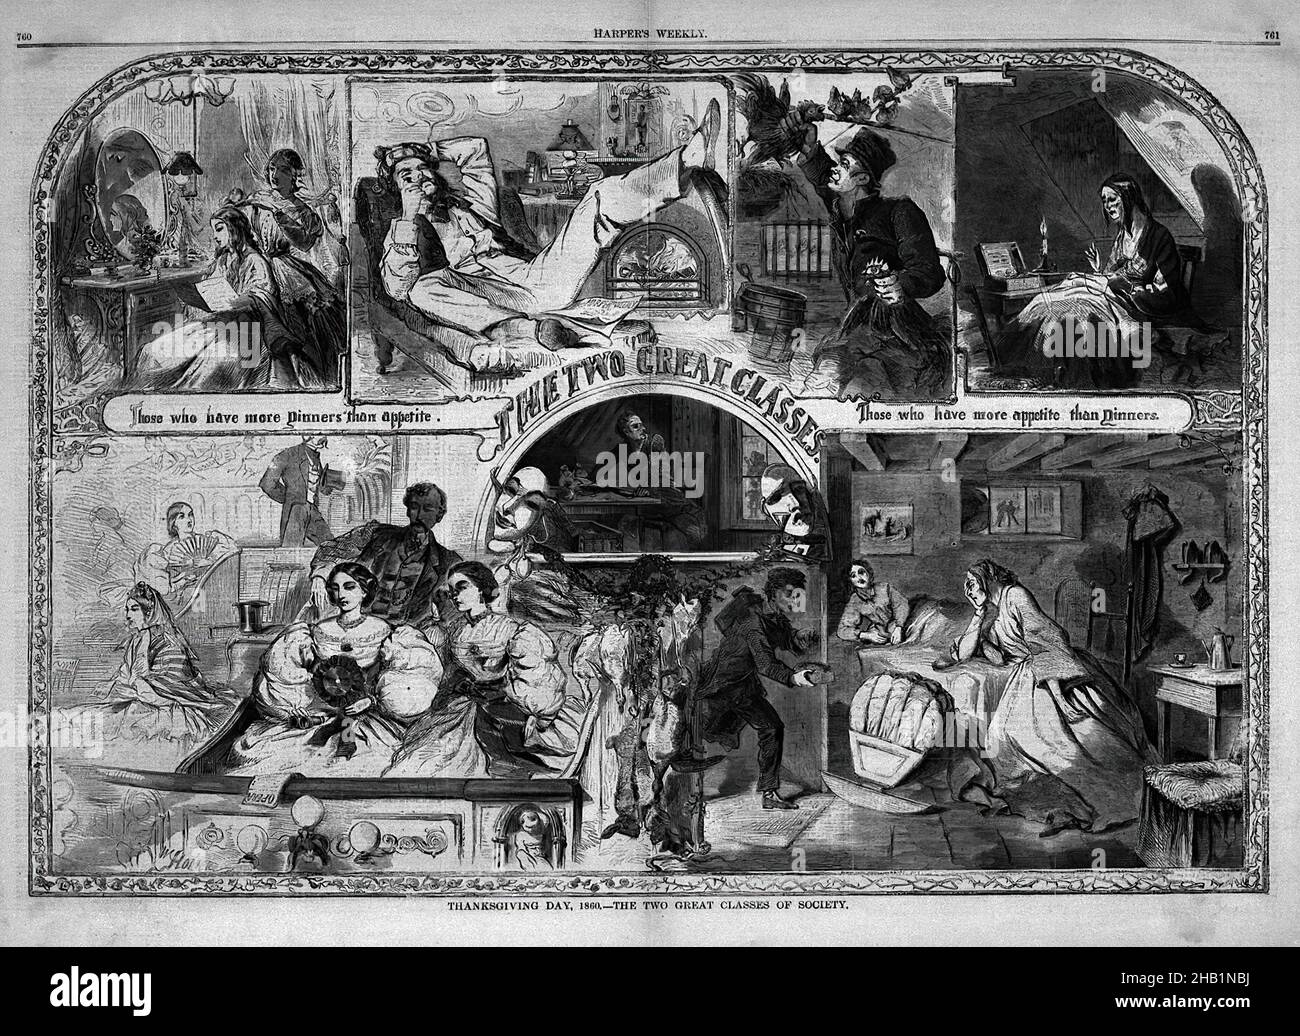 Giorno del Ringraziamento, 1860--le due grandi classi della società ', Winslow Homer, americano, 1836-1910, incisione del legno, 1860, immagine: 13 7/8 x 20 1/2 pollici, 35,2 x 52,1 cm, rendimento di grazie, Afro-Americani, schiavitù Foto Stock